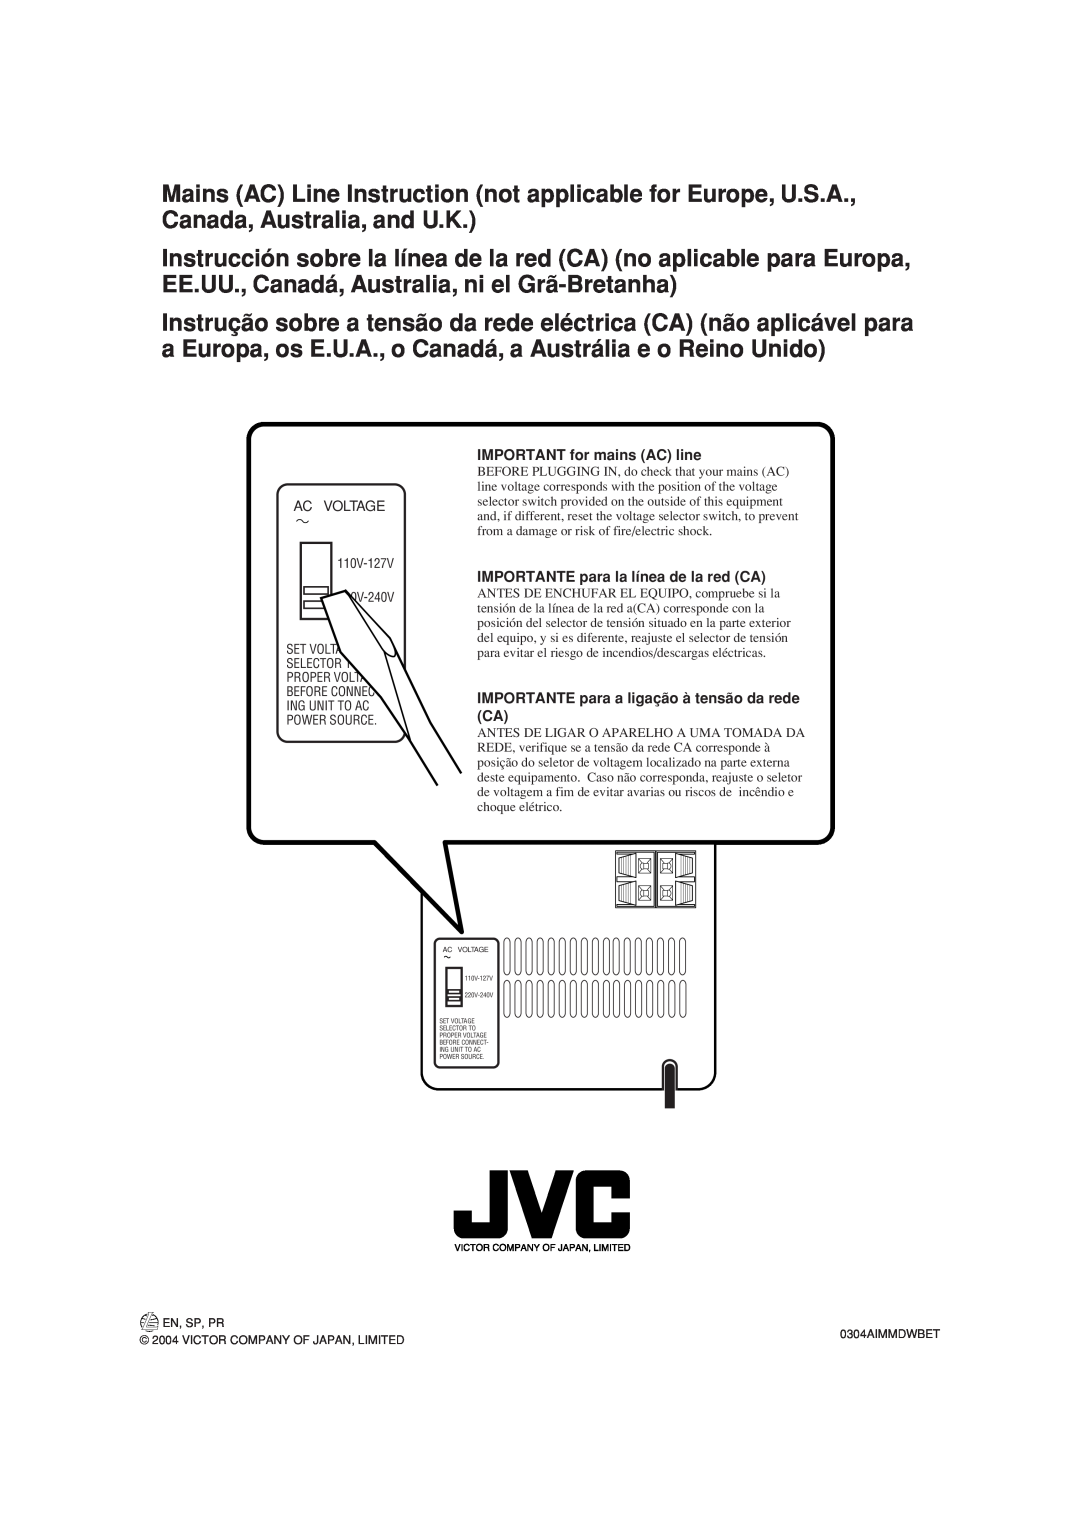 JVC UX-H100 IMPORTANT for mains AC line, IMPORTANTE para la línea de la red CA, Set Selector Proper Before, En, Sp, Pr 